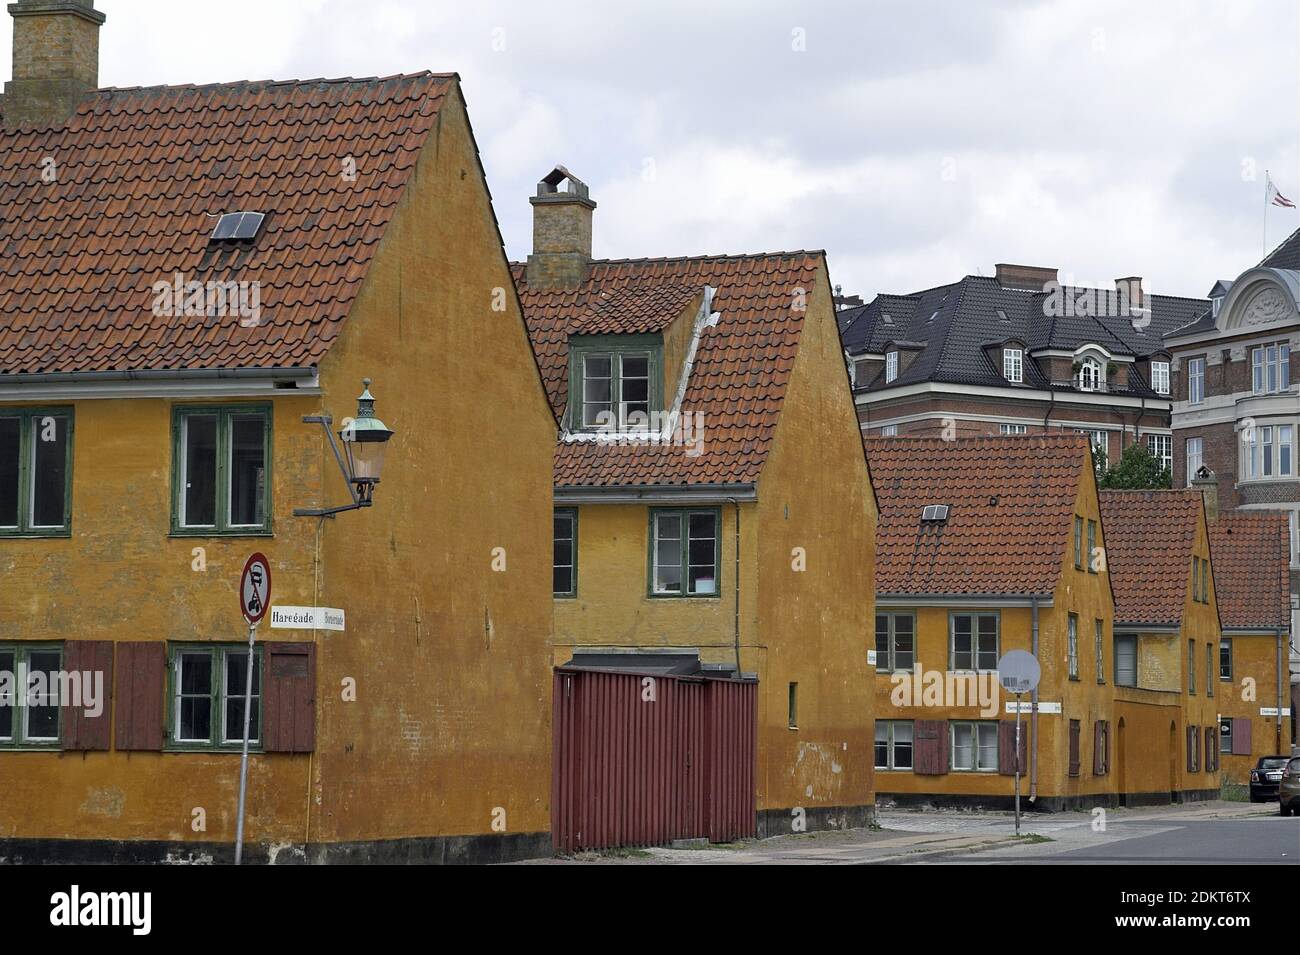 Copenhague, Kopenhagen, Danemark, Dänemark; Nyboder - quartier résidentiel historique - anciennes casernes. Historisches Wohnviertel - ehemalige Kaserne. Banque D'Images